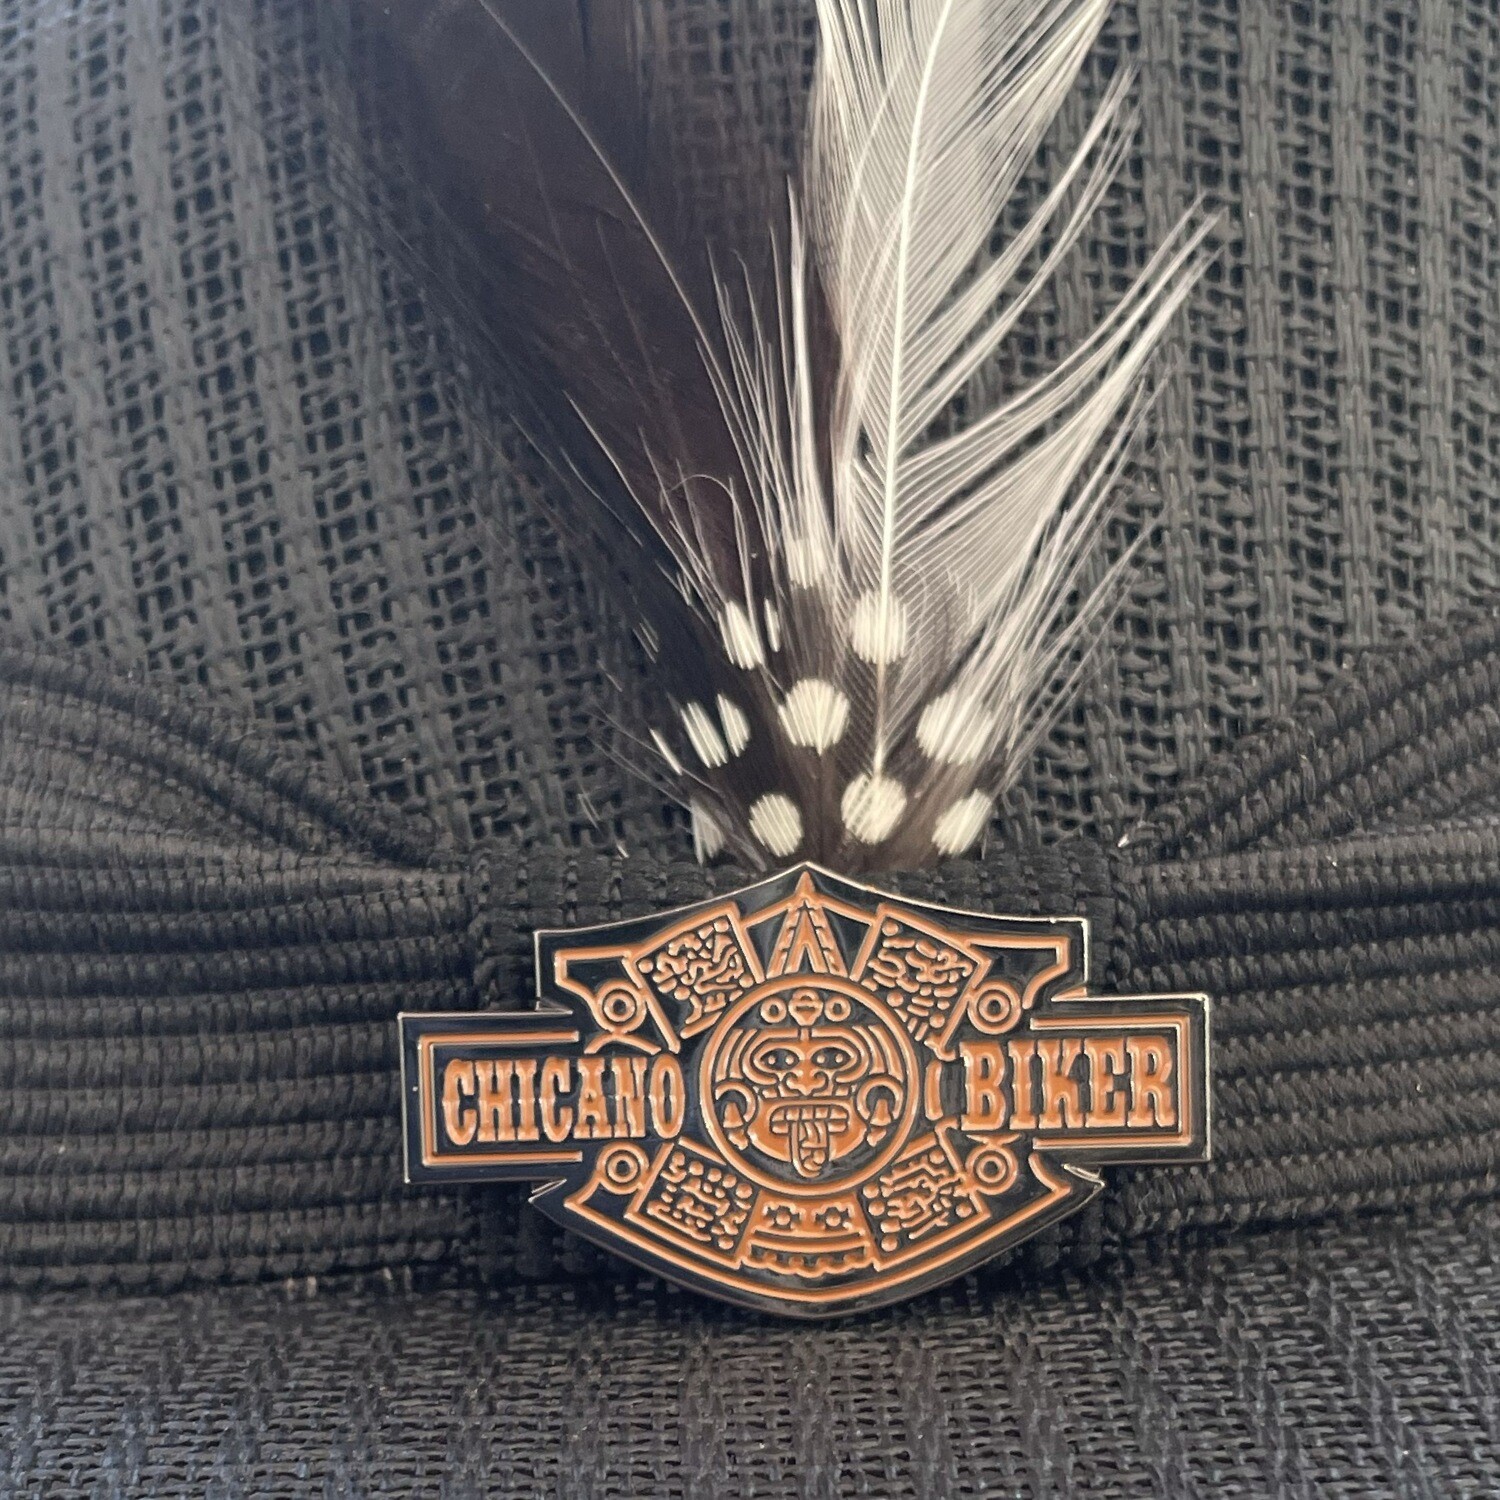 Chicano/ Aztec Biker Hat Pin